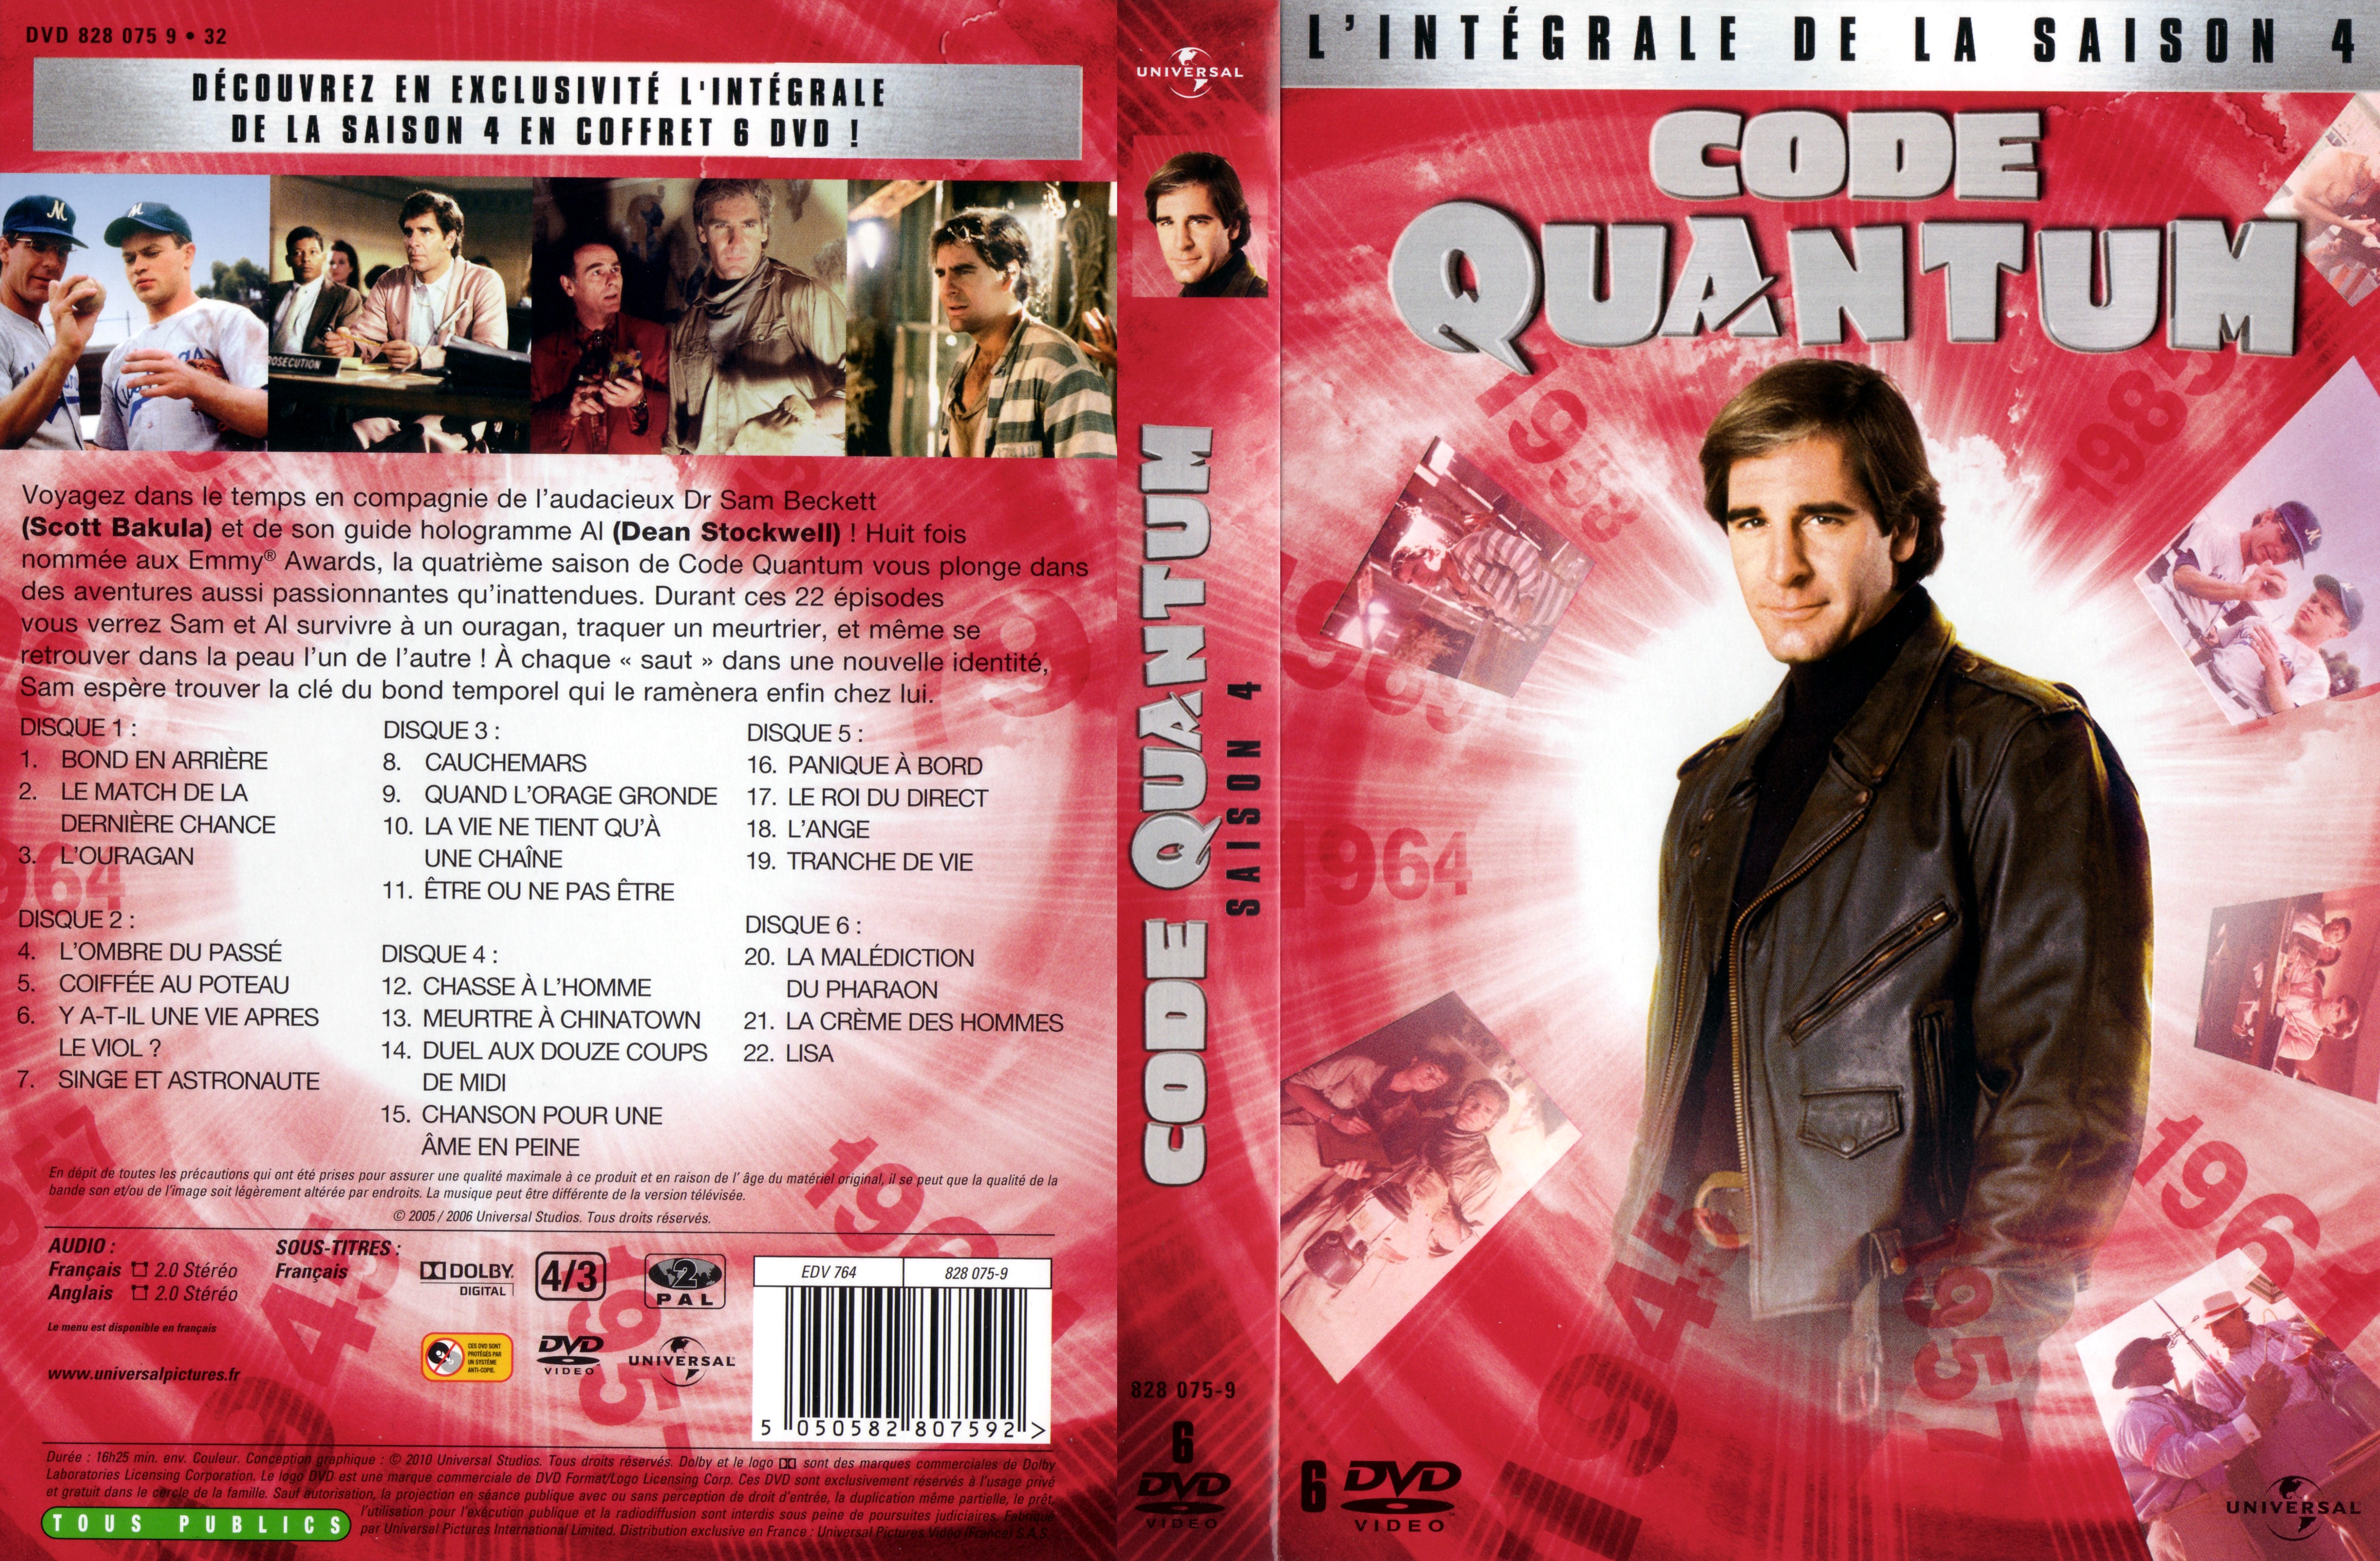 Jaquette DVD Code Quantum Saison 4 COFFRET